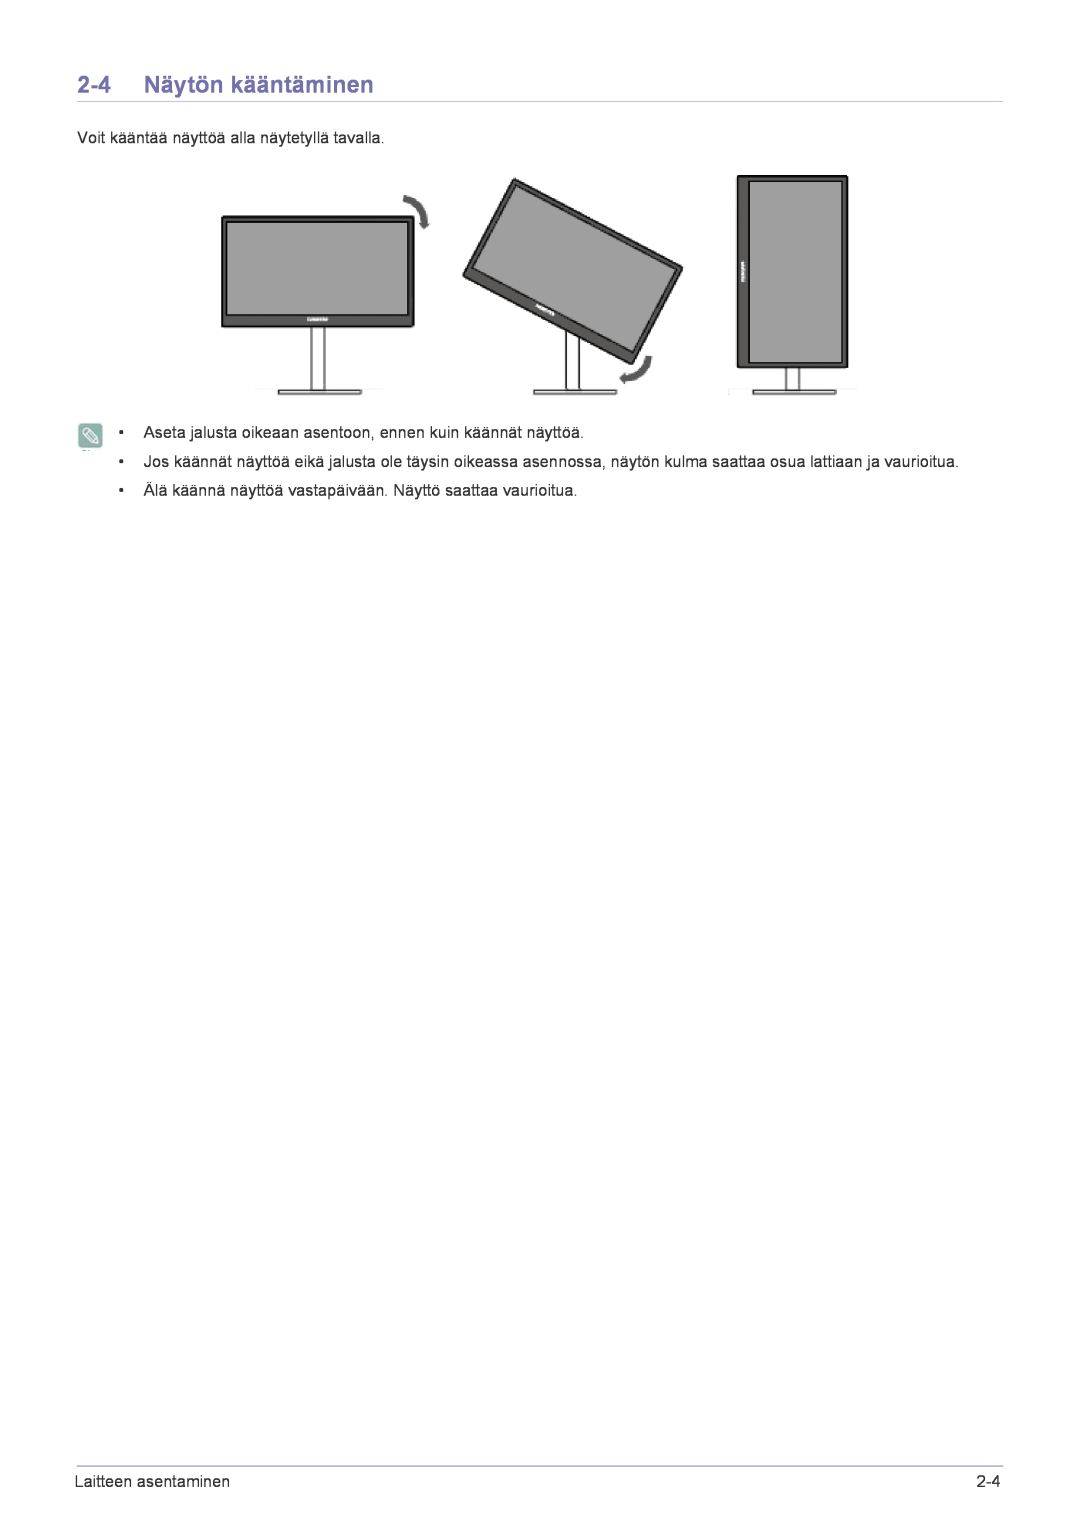 Samsung LF22NPBHBNP/EN manual 2-4 Näytön kääntäminen, Voit kääntää näyttöä alla näytetyllä tavalla, Laitteen asentaminen 